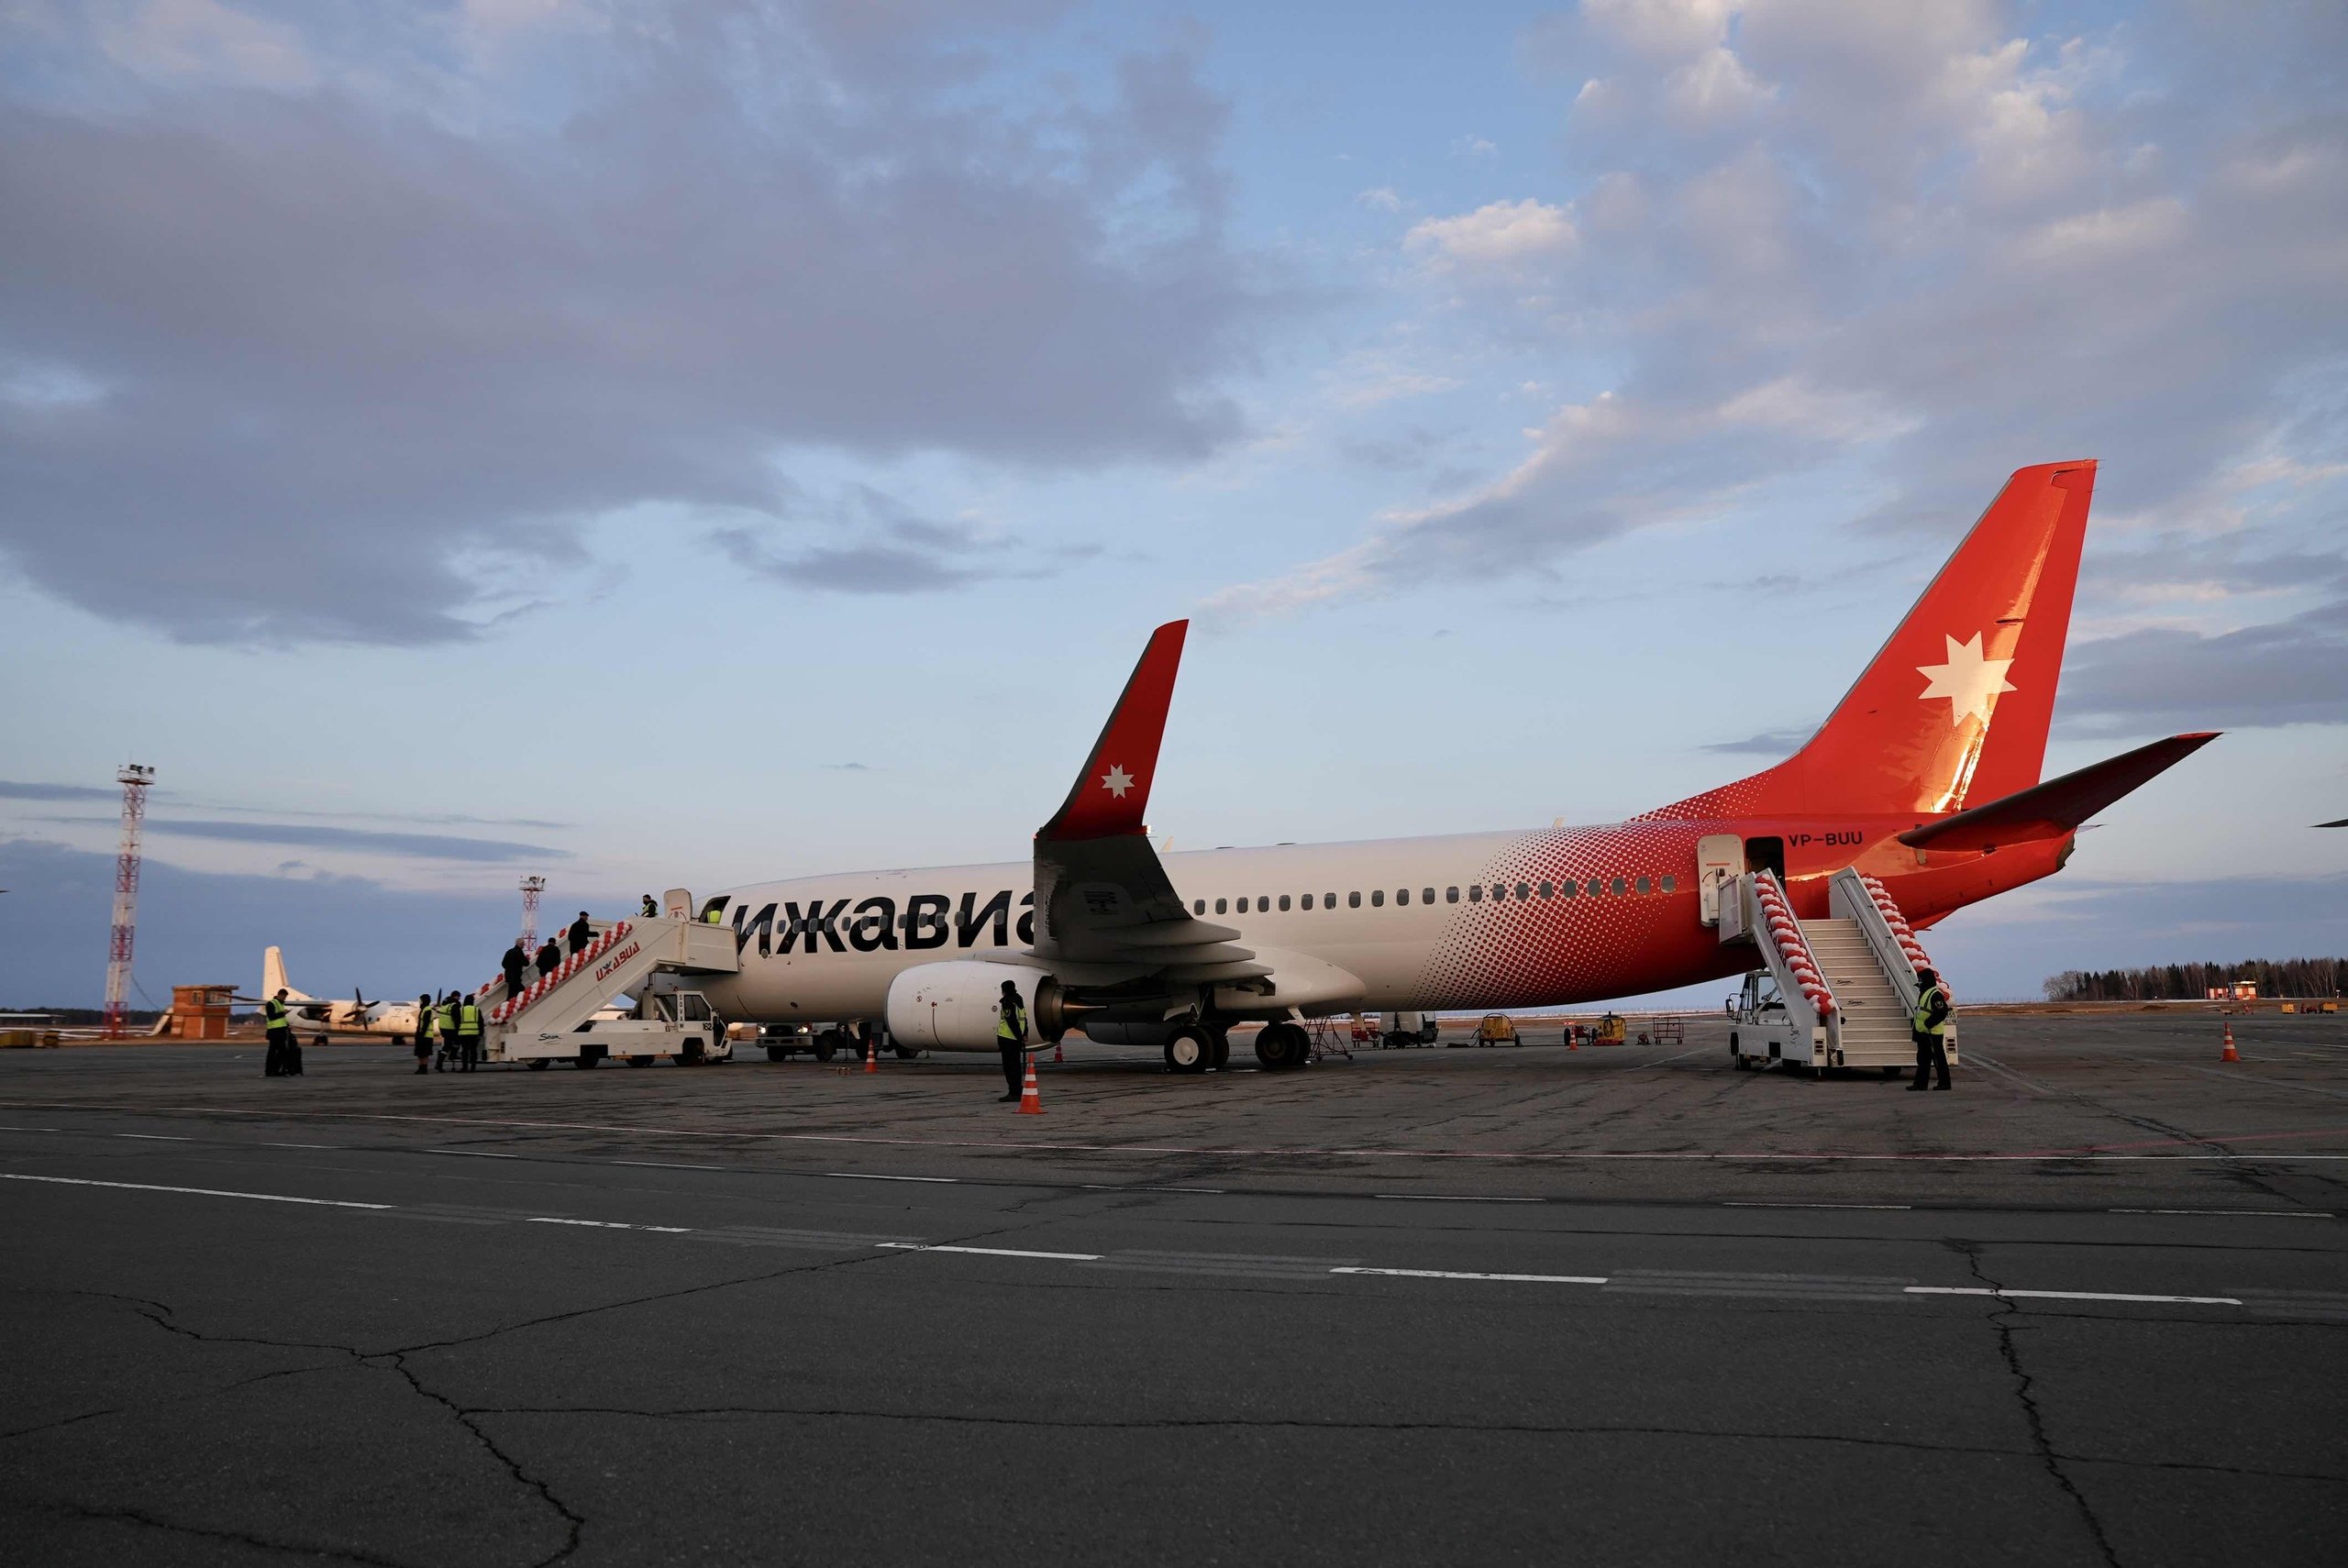 

Авиакомпанию «Ижавиа» допустили к выполнению международных воздушных перевозок

